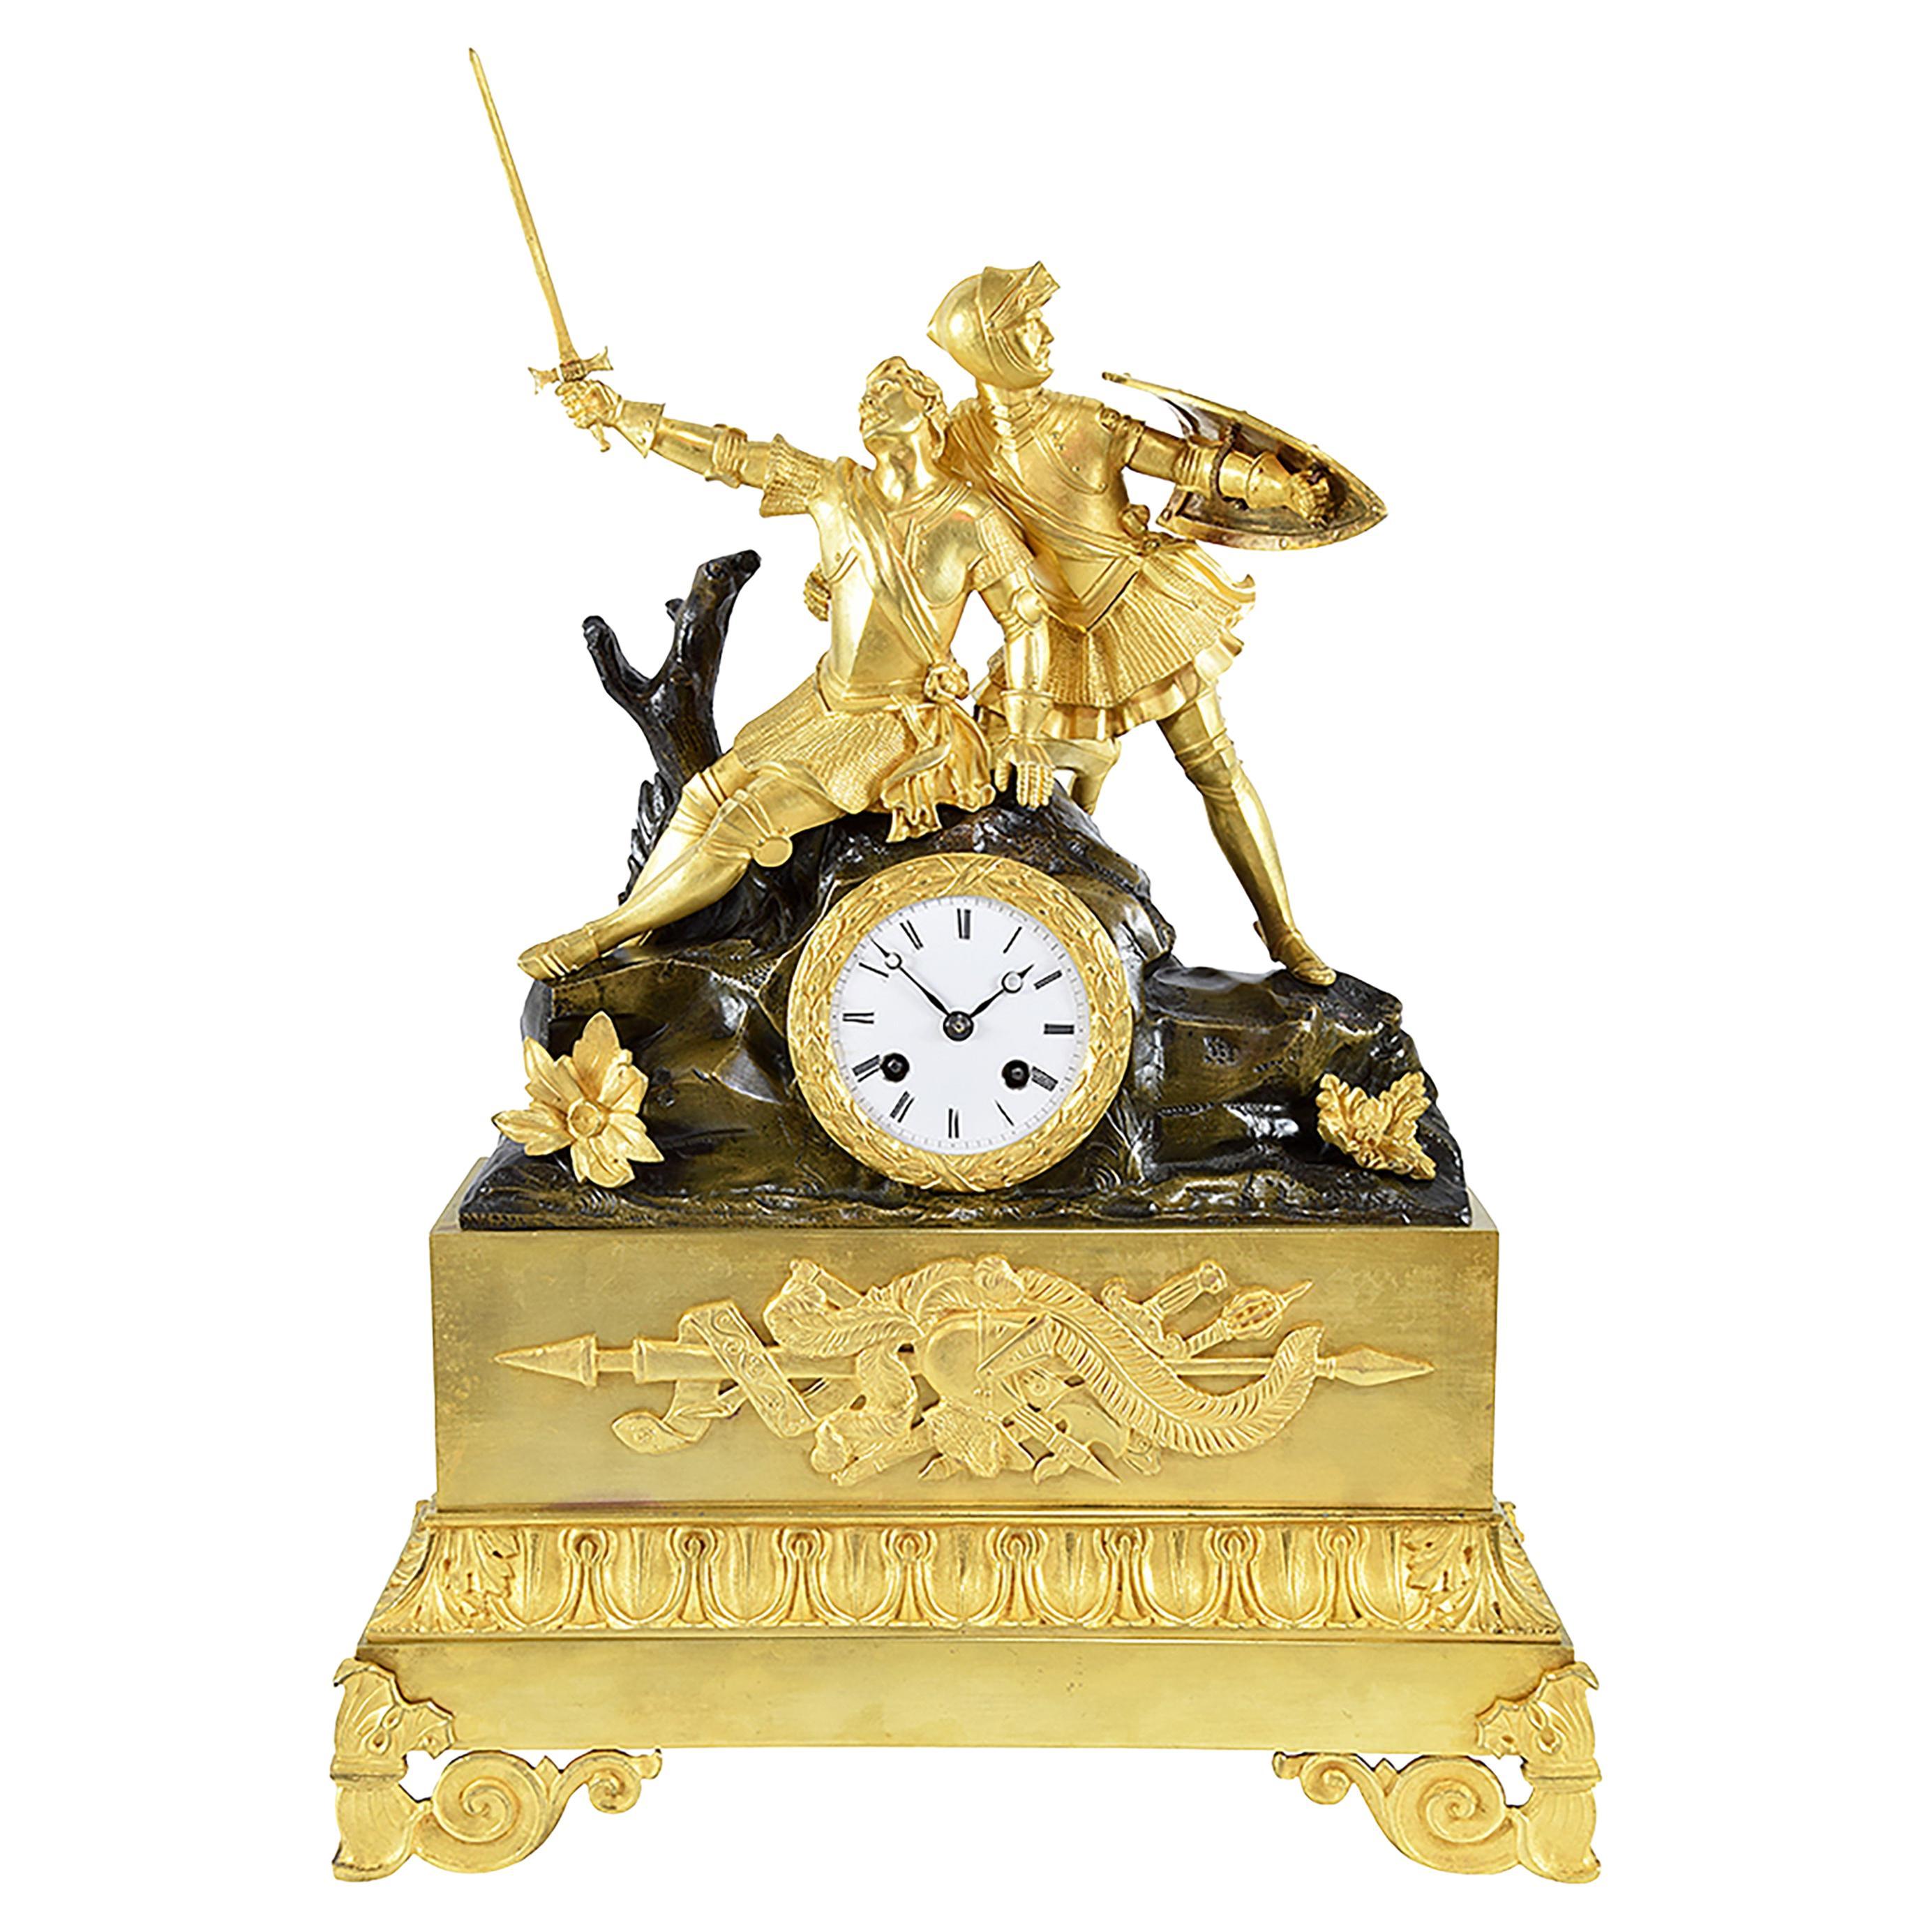 Horloge avec chevaliers en bronze doré et bronze patiné - Période de restauration